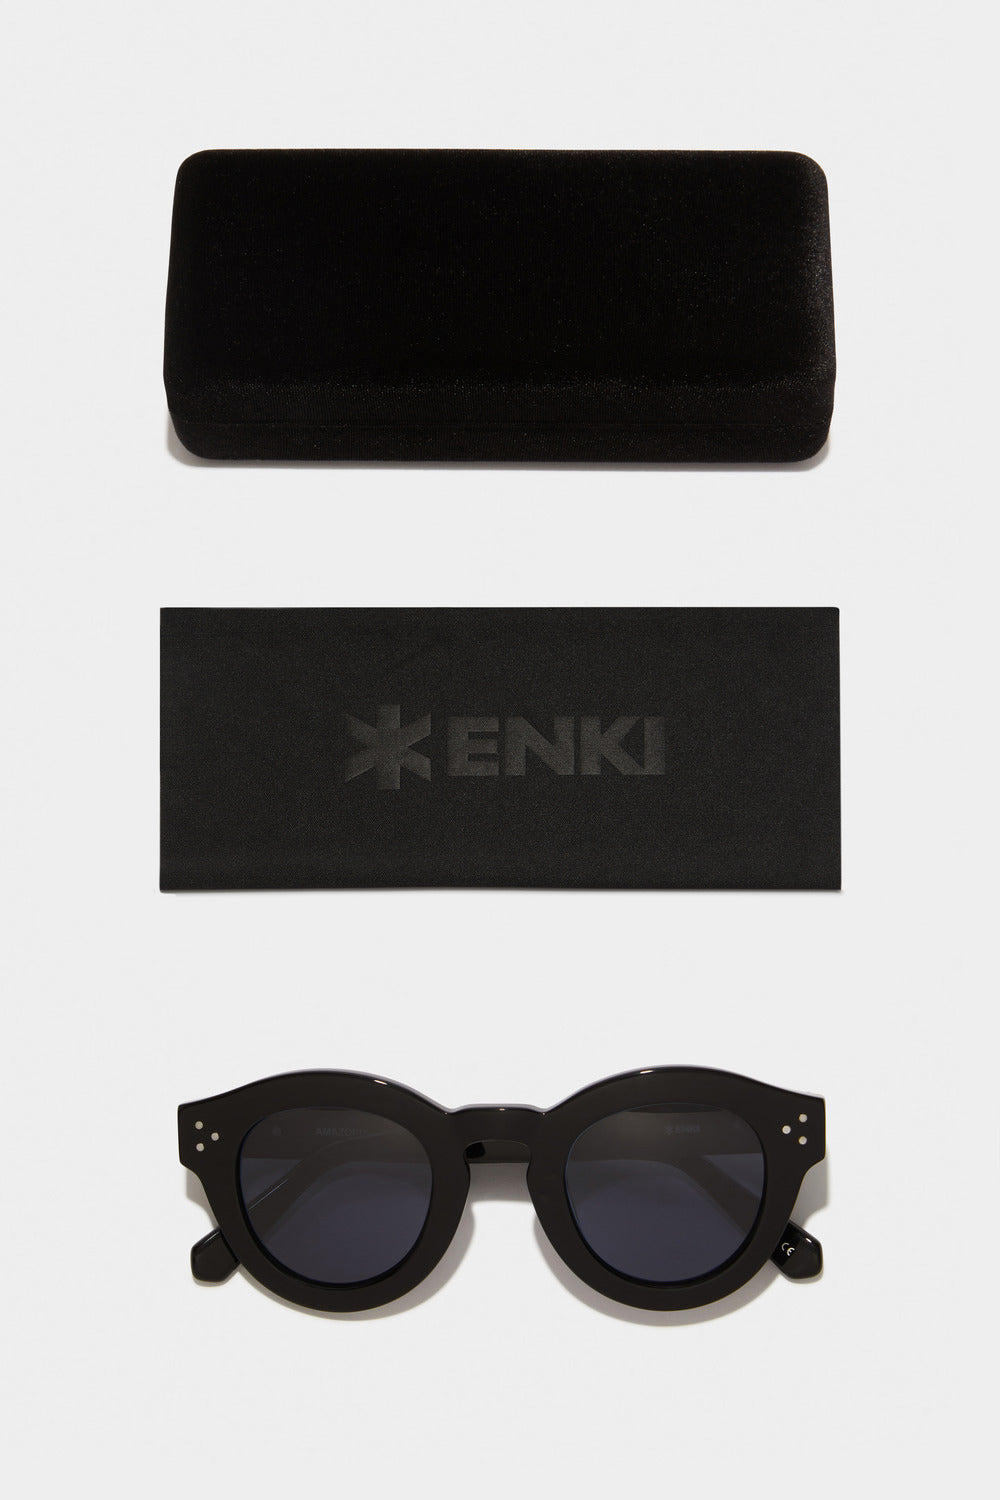 www.enkieyewear.com Amazonia Women’s Sunglasses